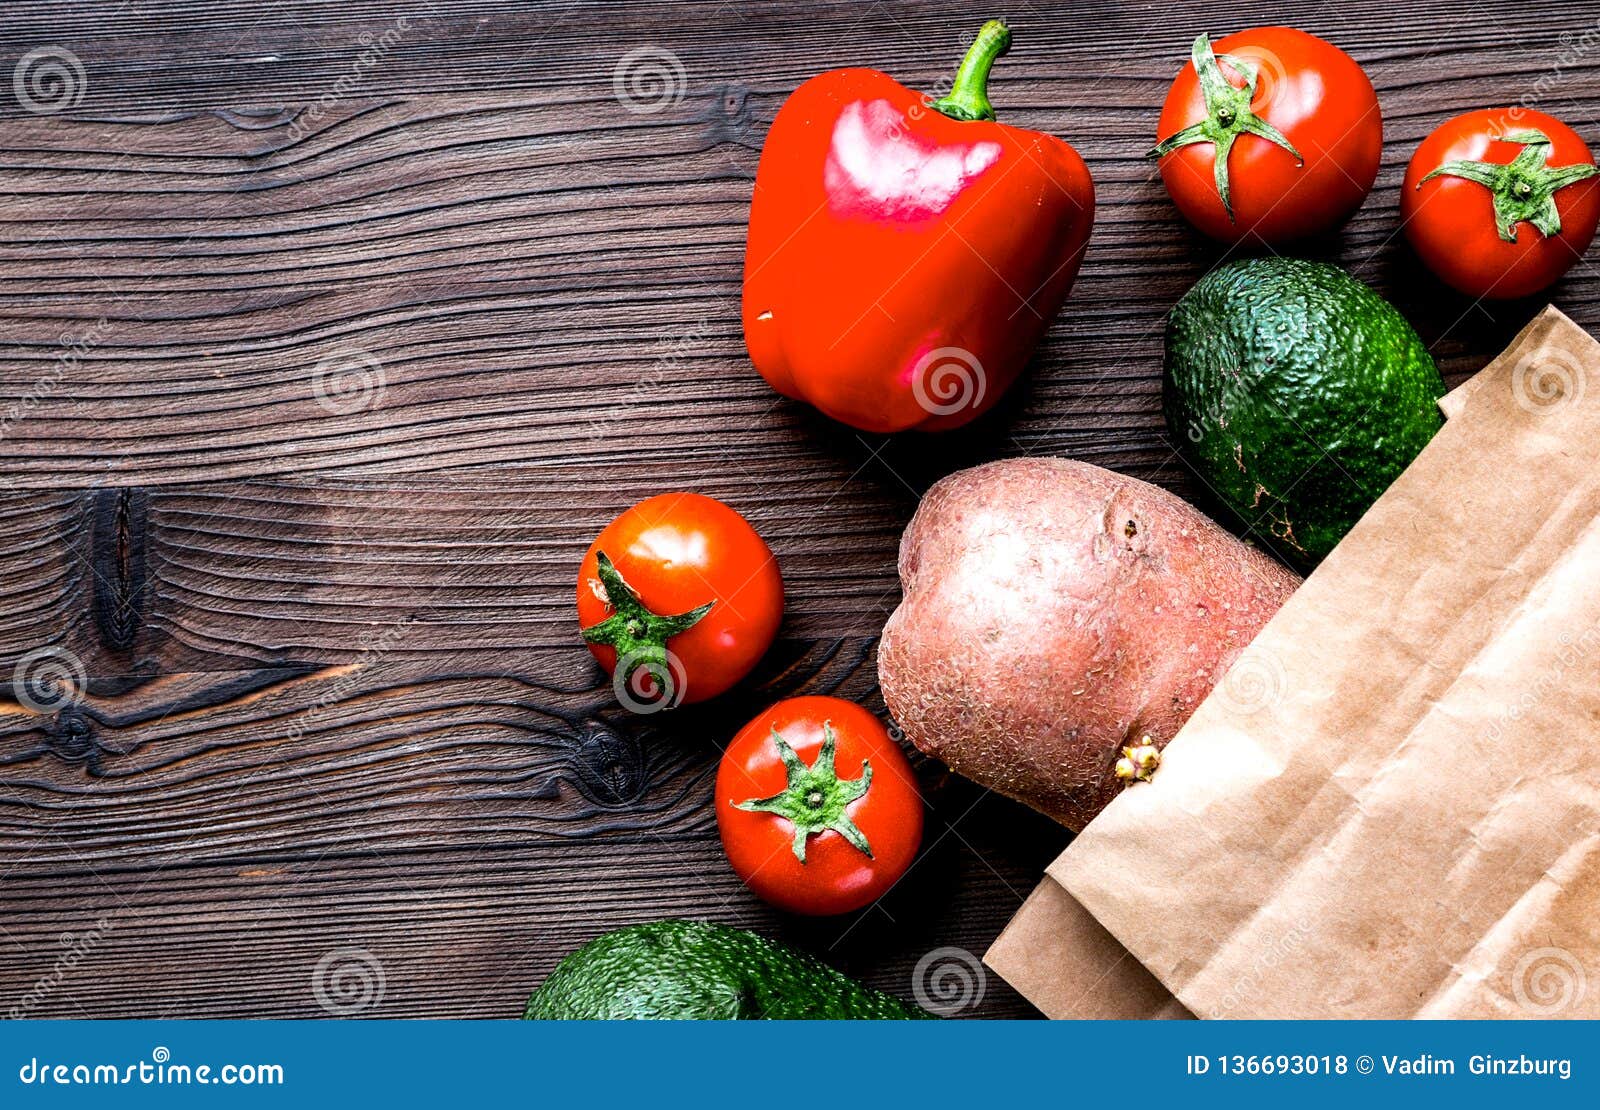 Download Vegetables And Paper Bag On Wooden Desk Background Top ...